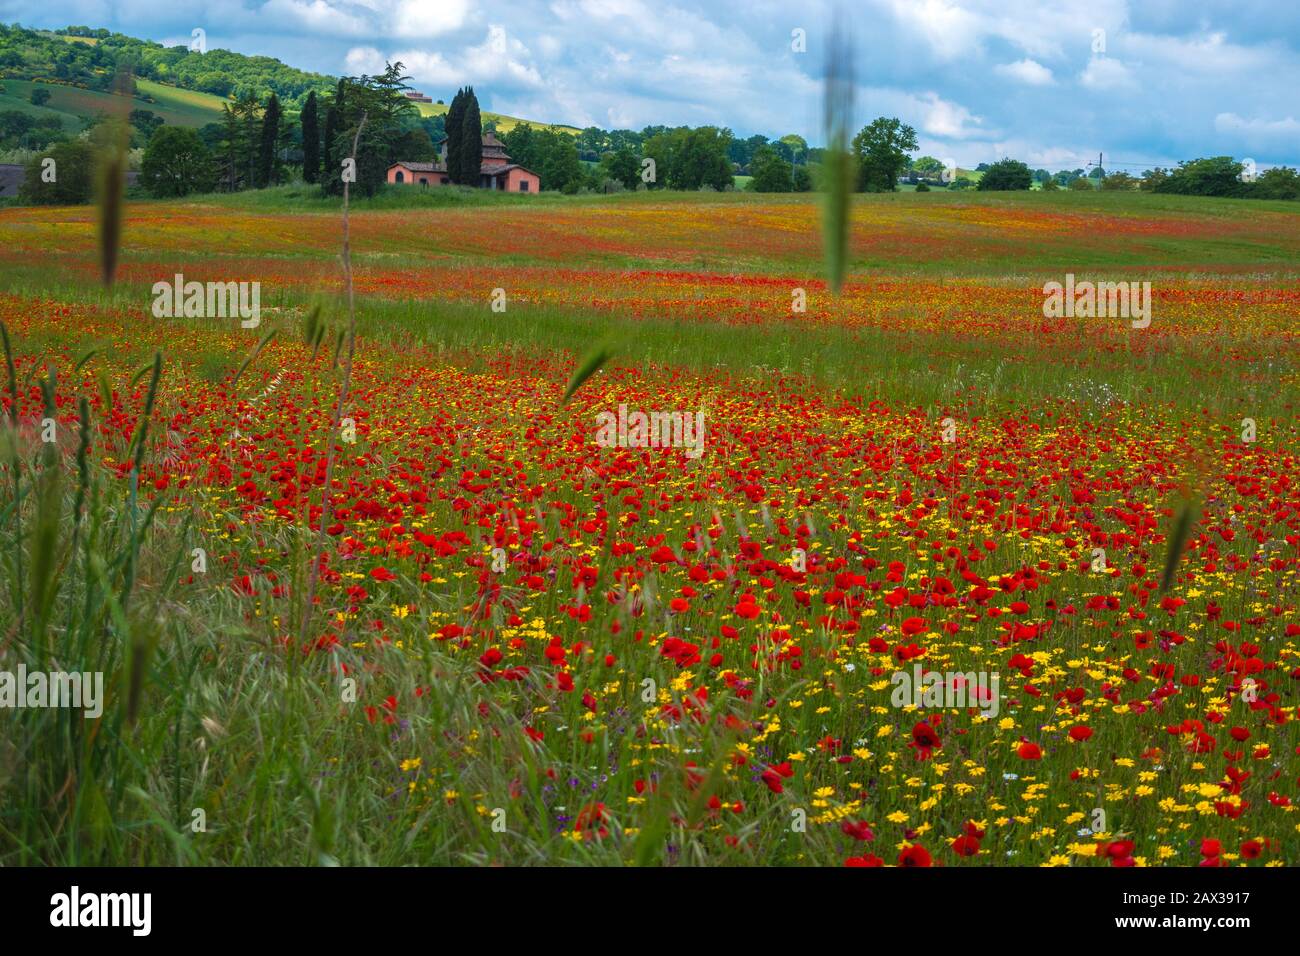 Maravillosa vista de las flores silvestres de colores vivos amarillo y rojo en la campiña toscana de Italia Foto de stock